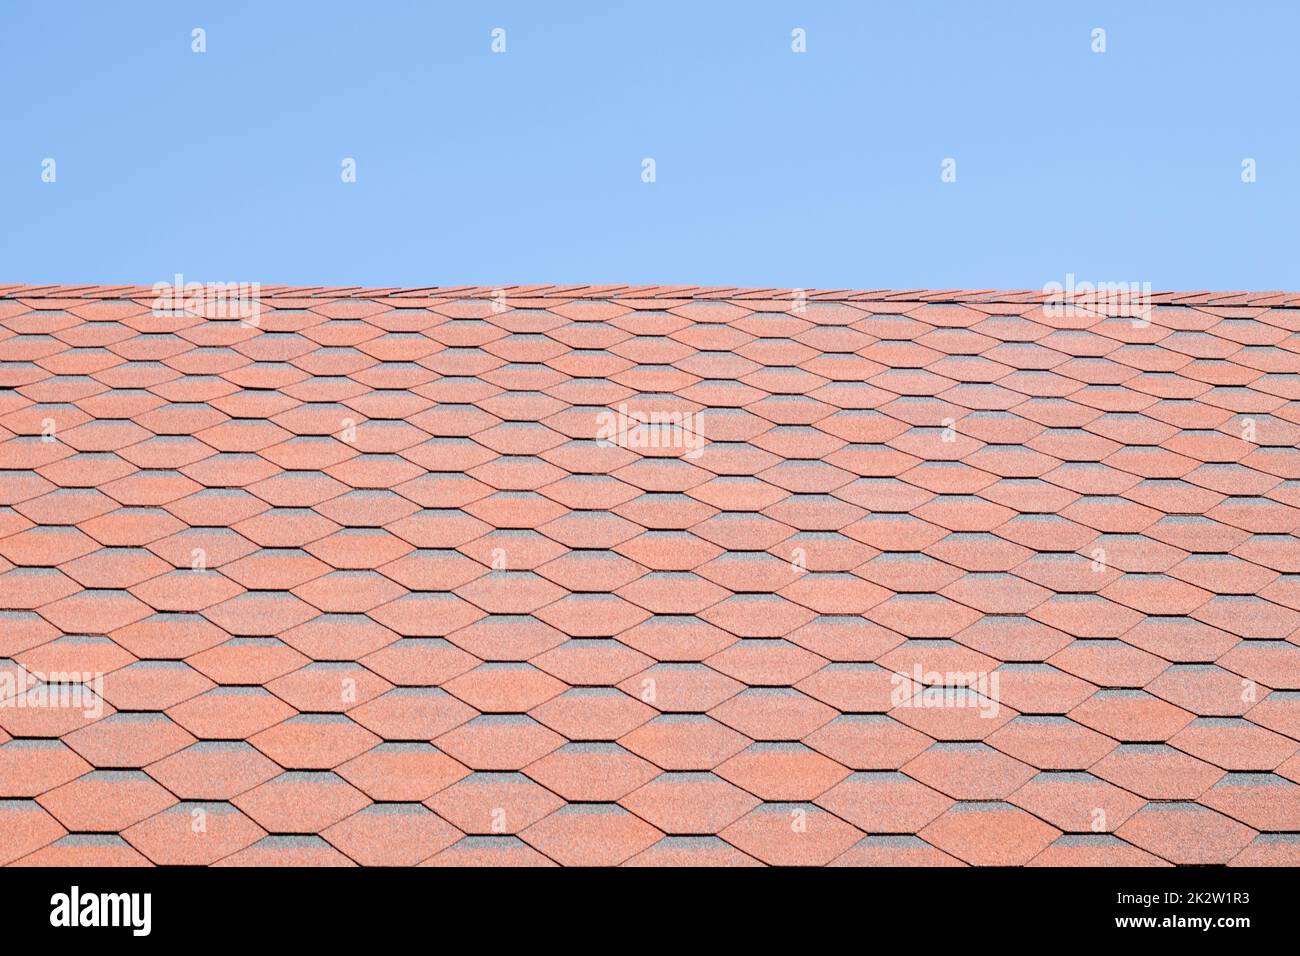 Nuovo tetto con scandole rosse contro il cielo blu. Foto di alta qualità. Tegole sul tetto della casa. Utilizzare per pubblicizzare la fabbricazione e la manutenzione del tetto. Texture macchiata. Copertura conveniente. Foto Stock